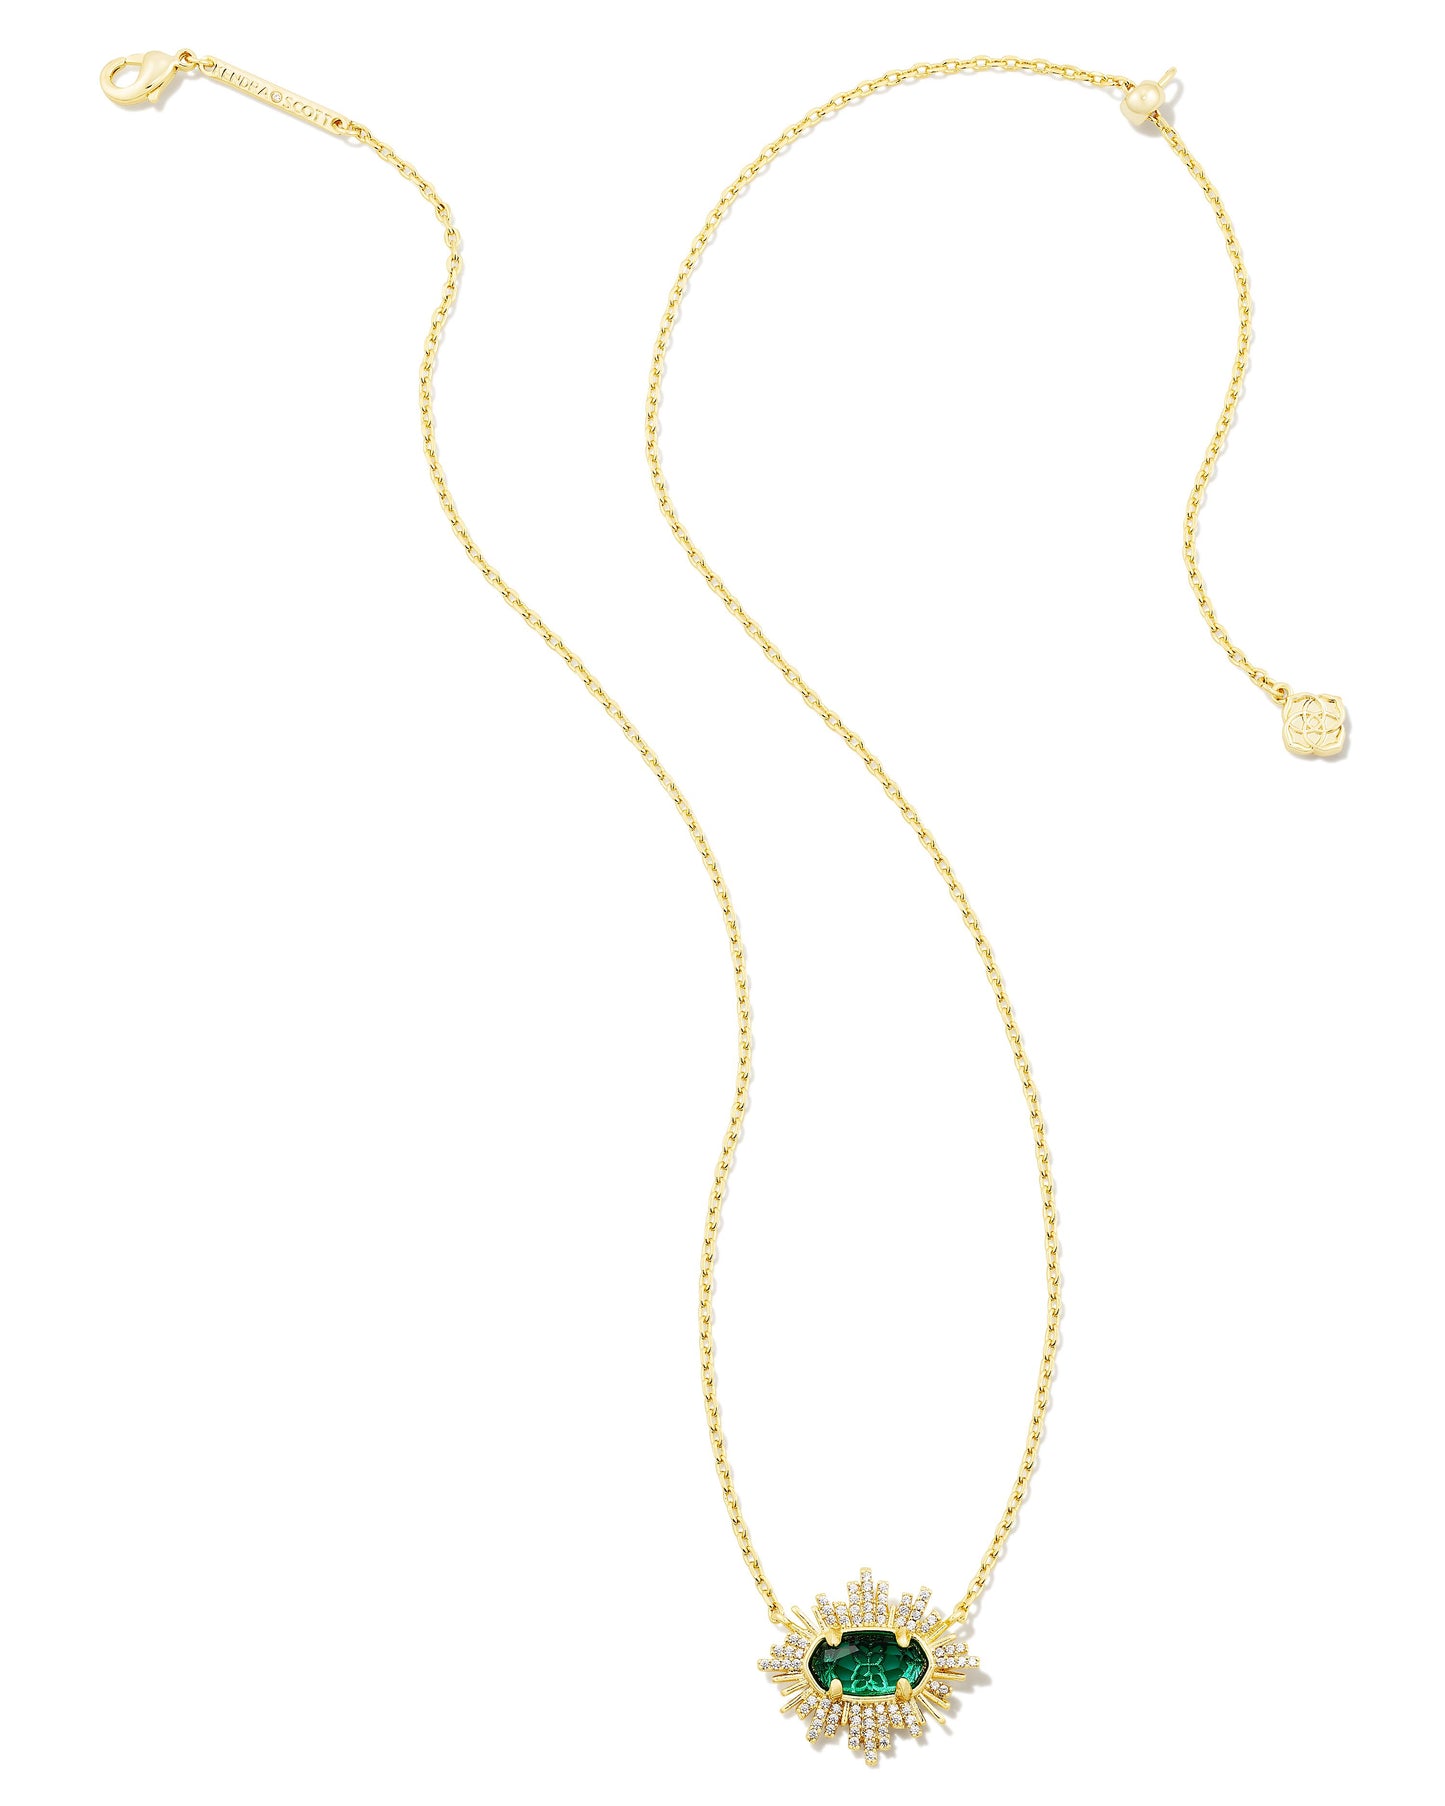 Grayson Sunburst Frame Necklace | Gold & Green Glass